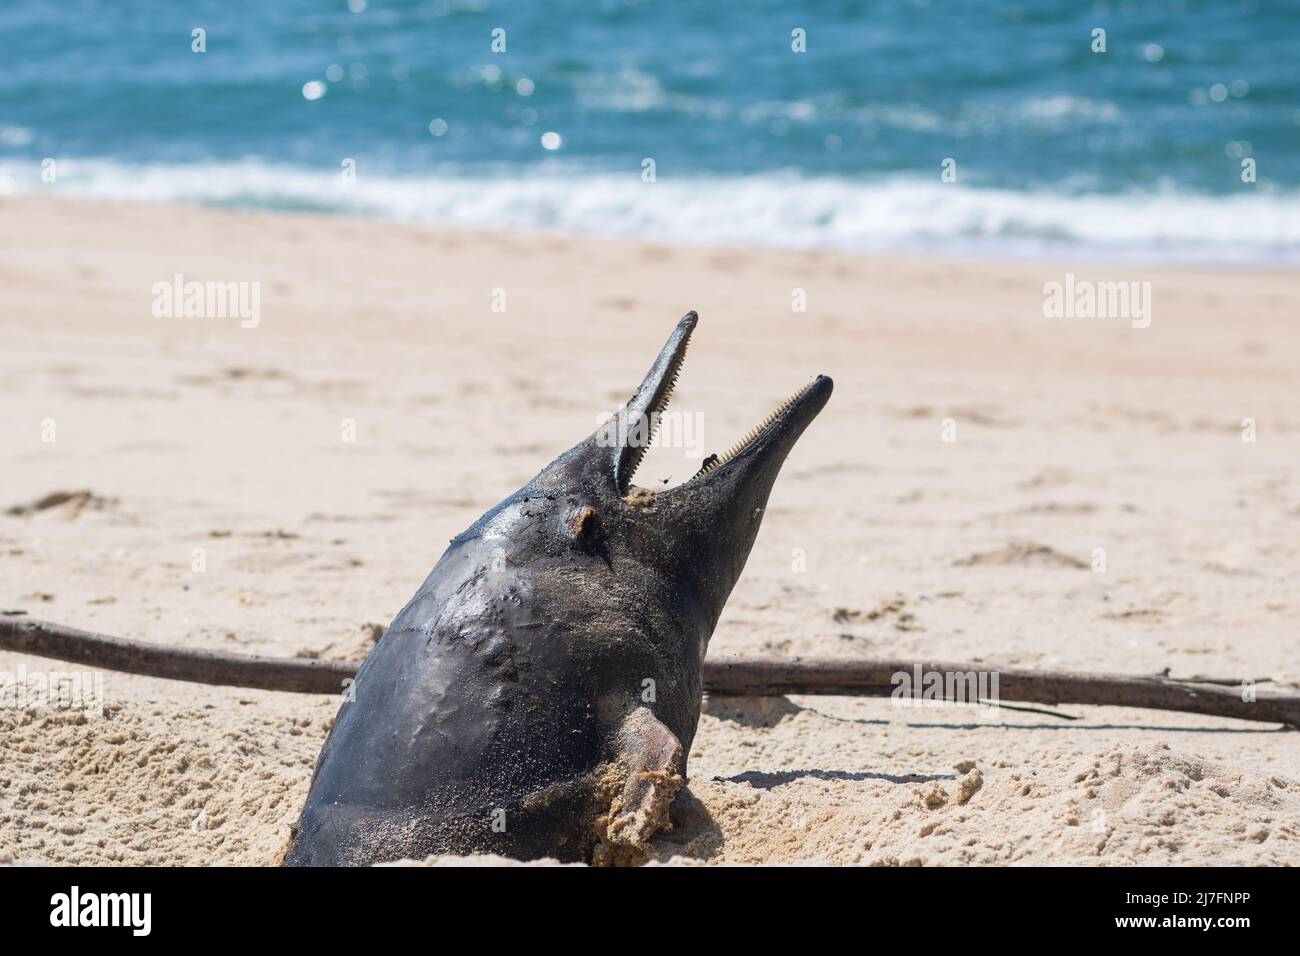 Una marsopa muerta enterrada se lavó a tierra en la playa en una etapa avanzada de descomposición con la cabeza saliendo de la arena y la boca abierta Foto de stock